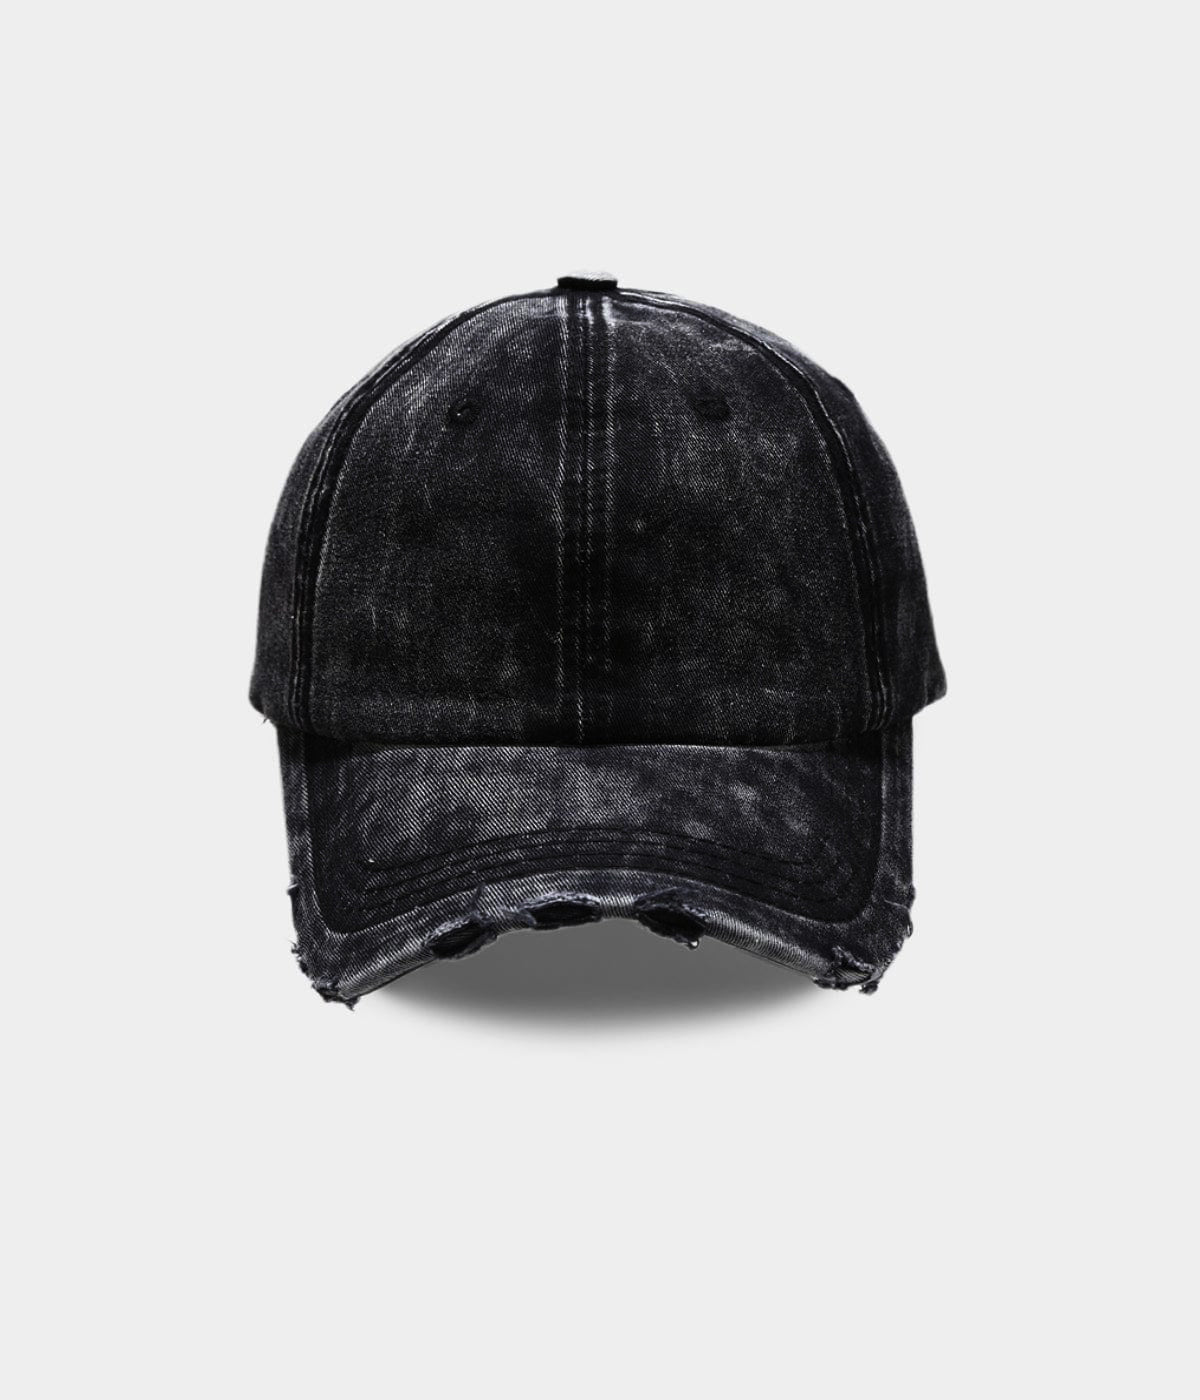 DISTRES$ED Vintage Cap (Black)